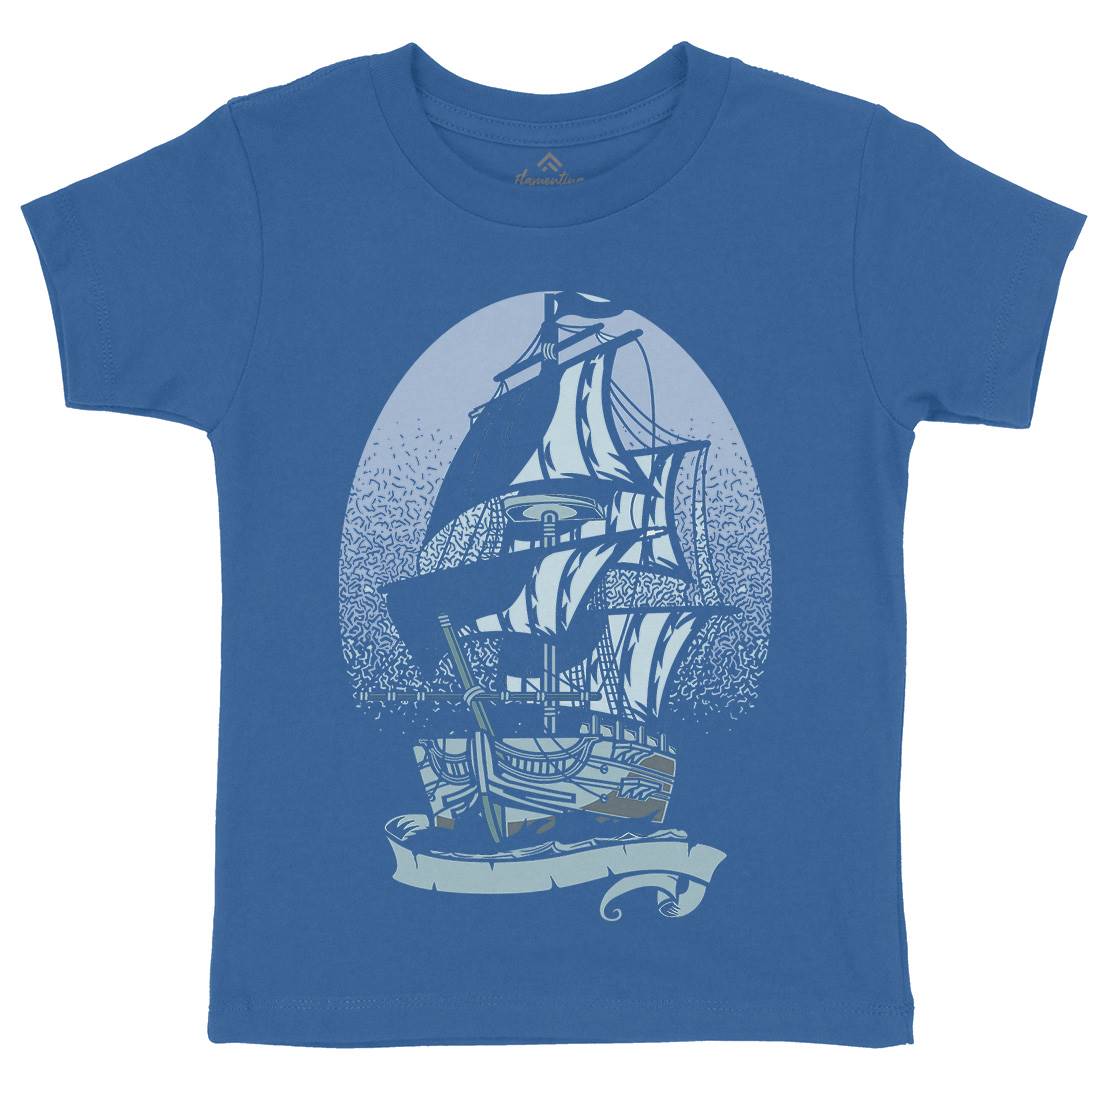 Ship Kids Crew Neck T-Shirt Navy A140